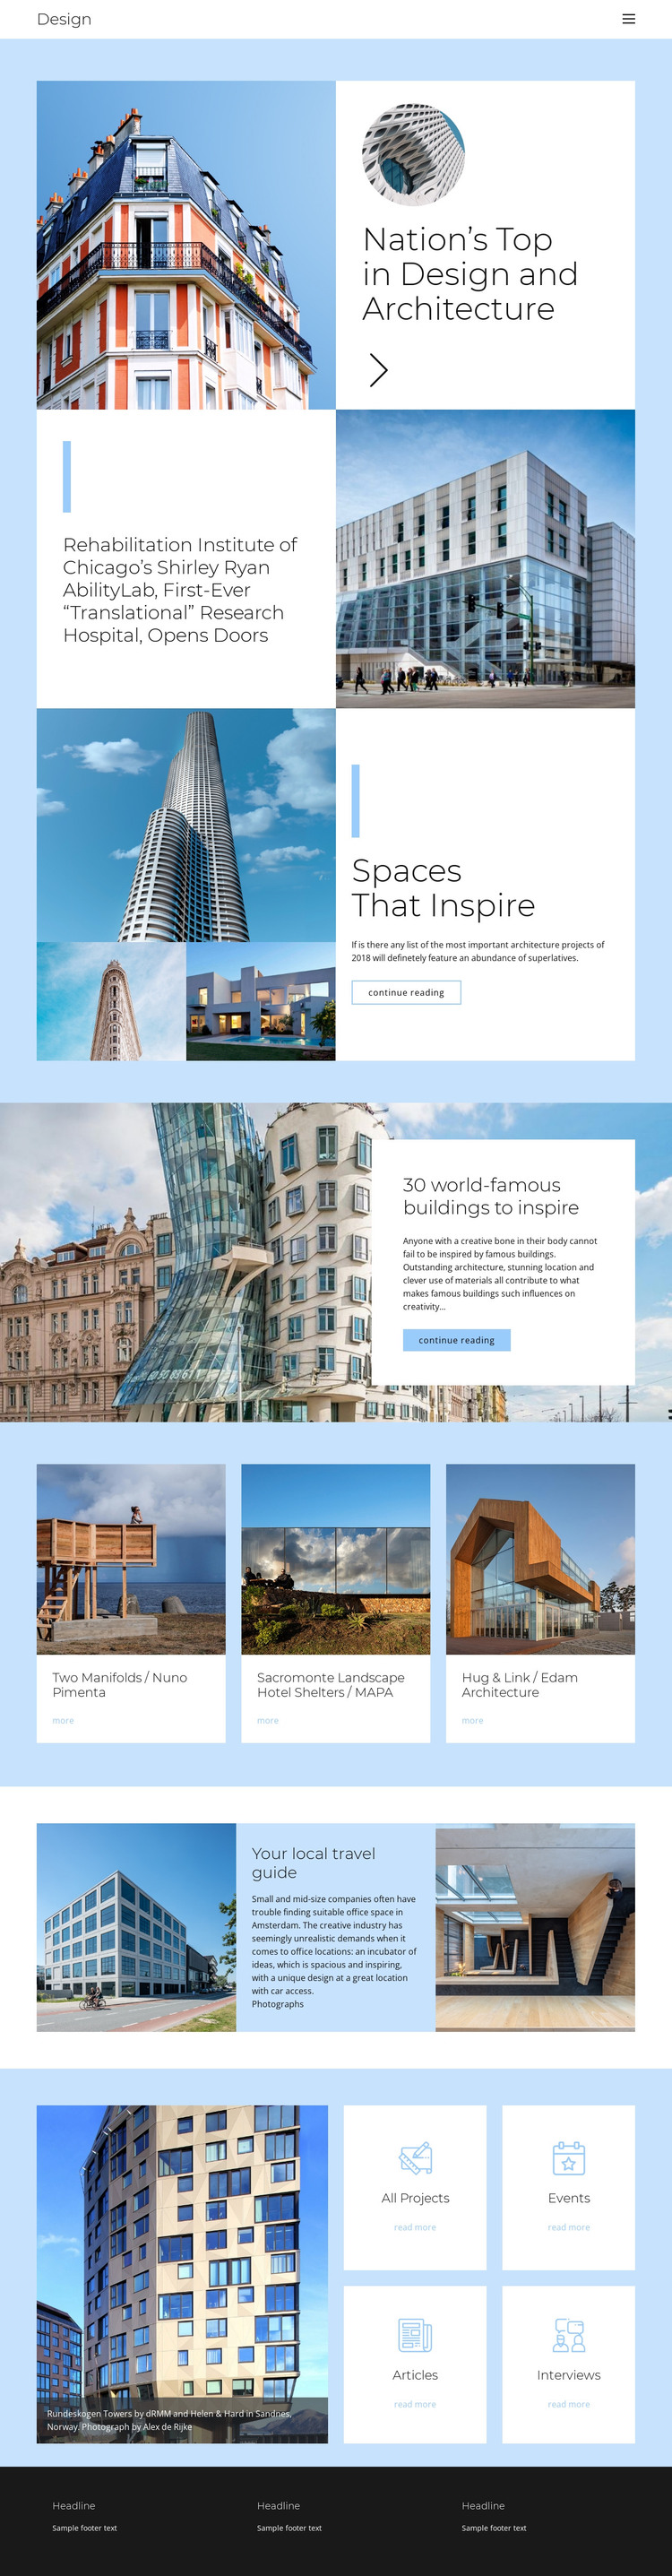 Architecture city guide Web Design